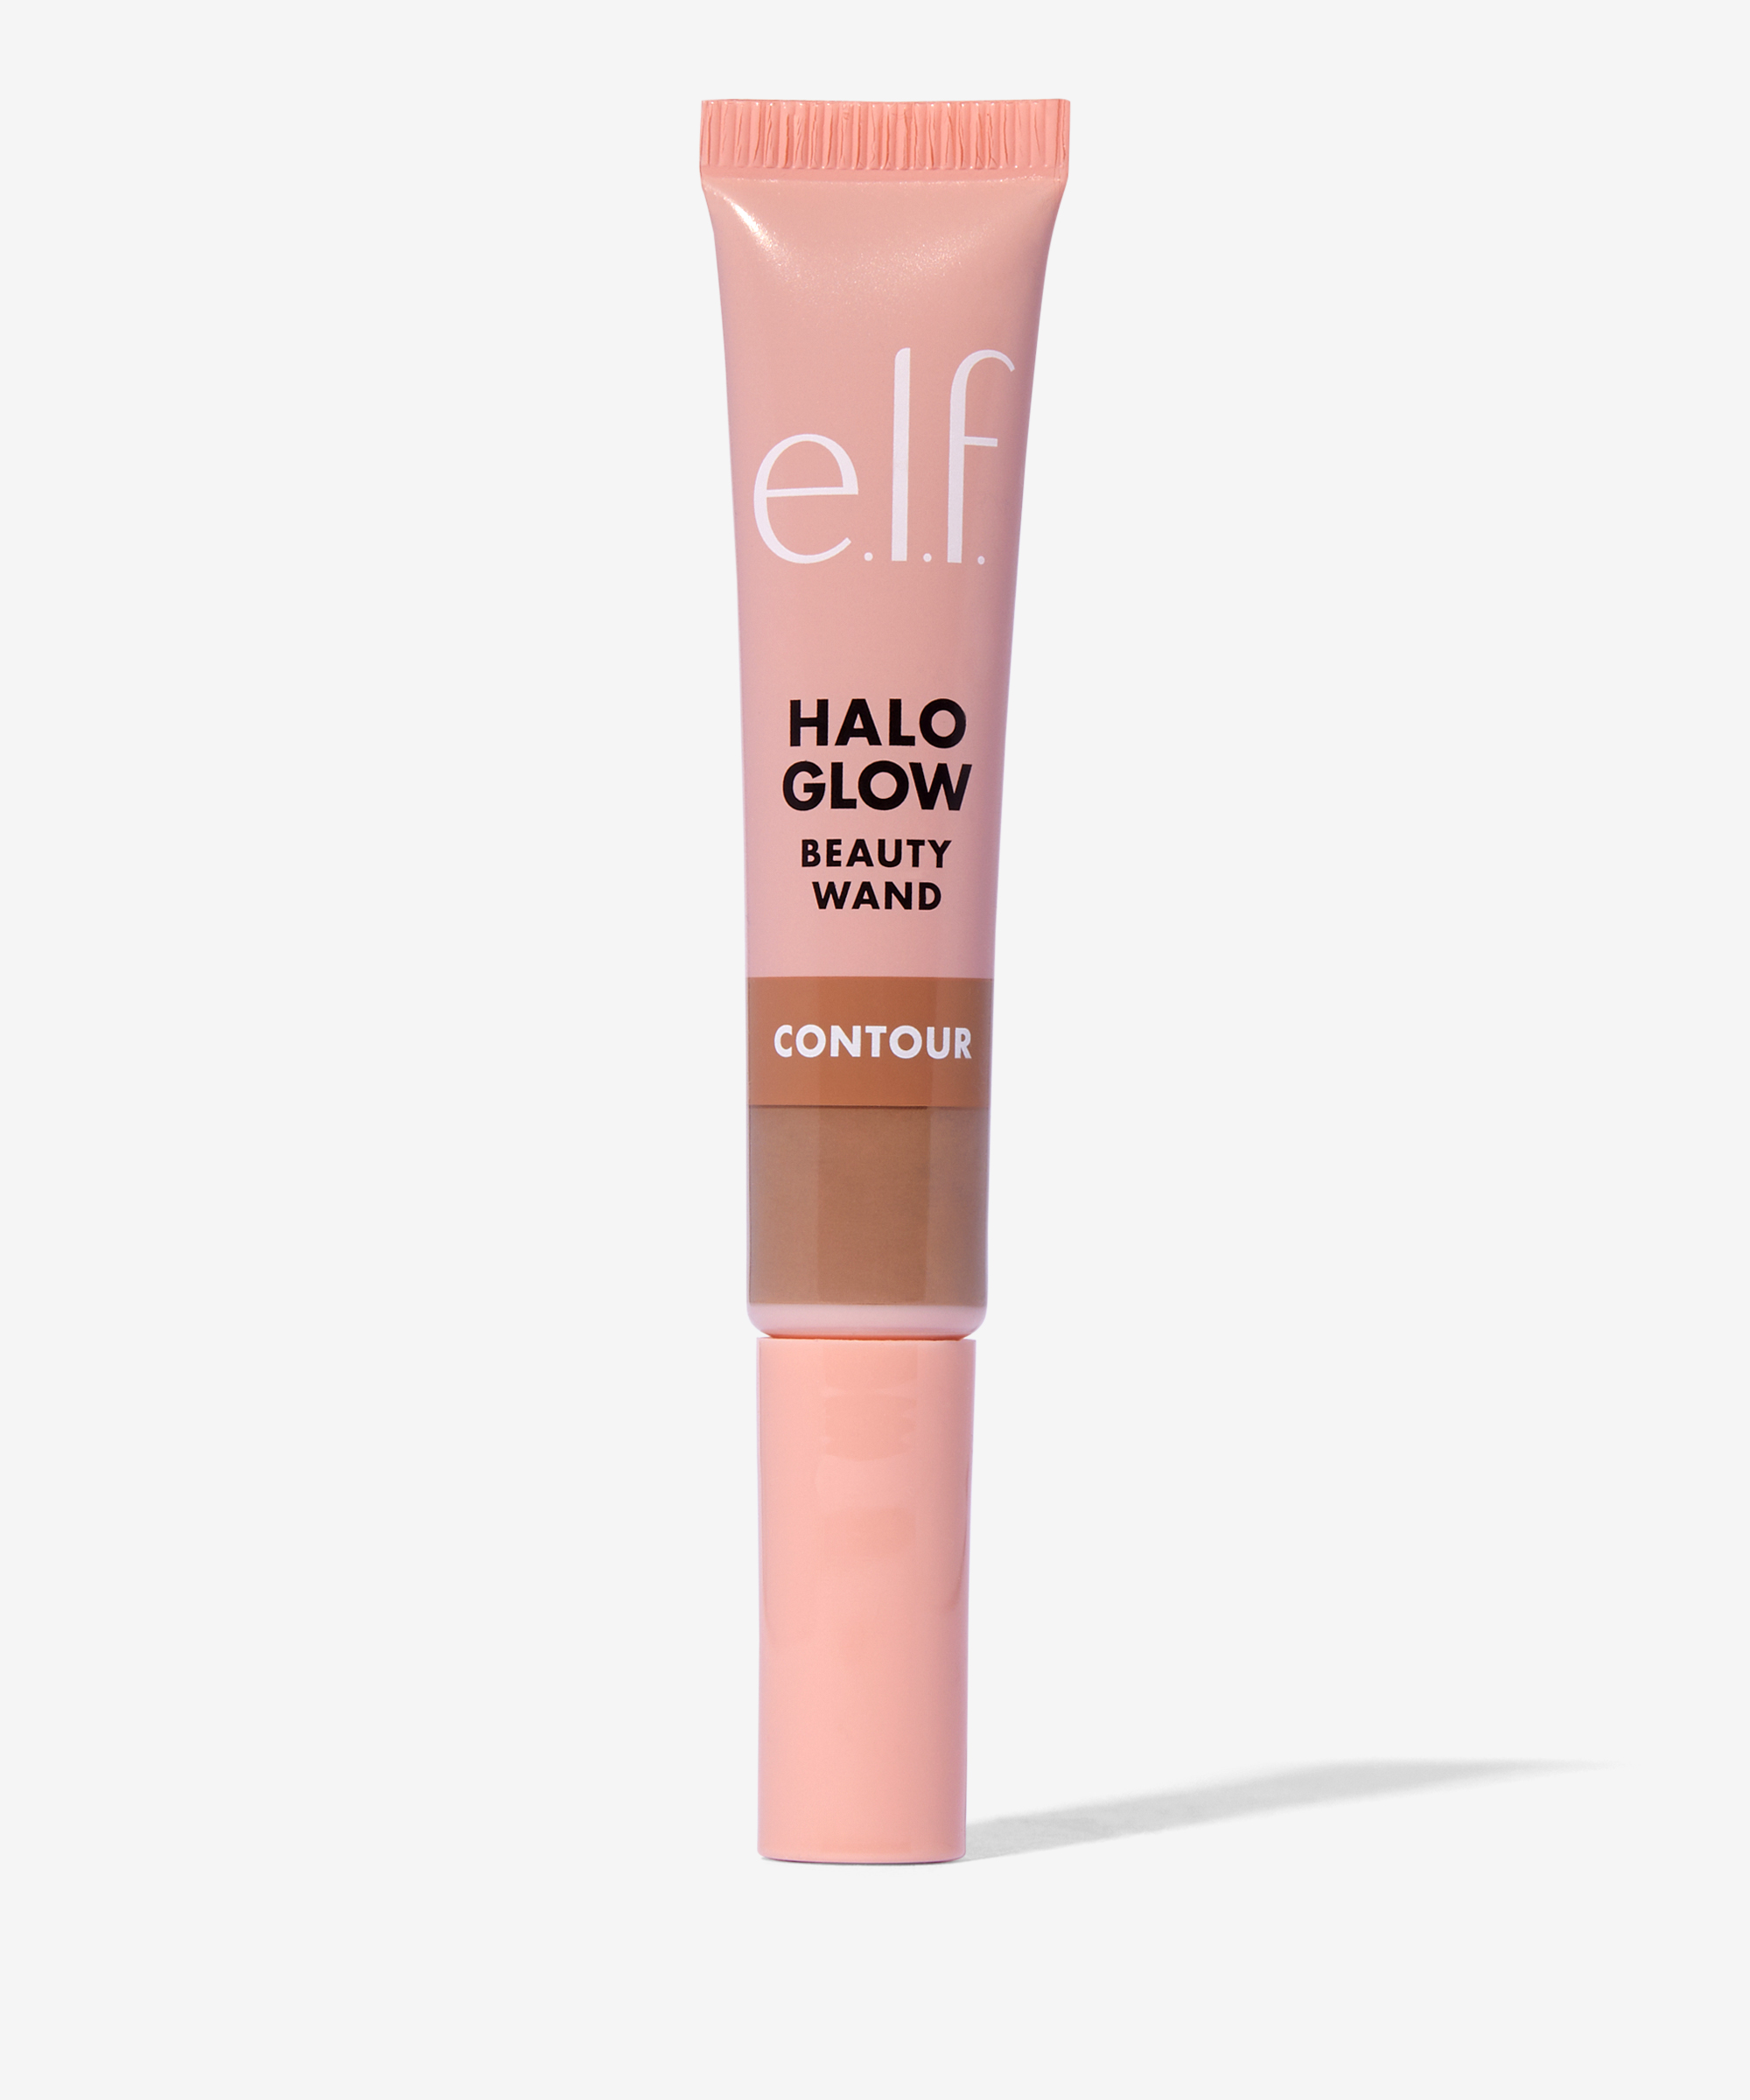 Le surligneur et les baguettes de contour les plus légers ELF Halo Glow  sont échantillonnés et estompés sur une peau froide avec des nuances roses.  Nuances campagne champagne et clair/clair : r/PaleMUA